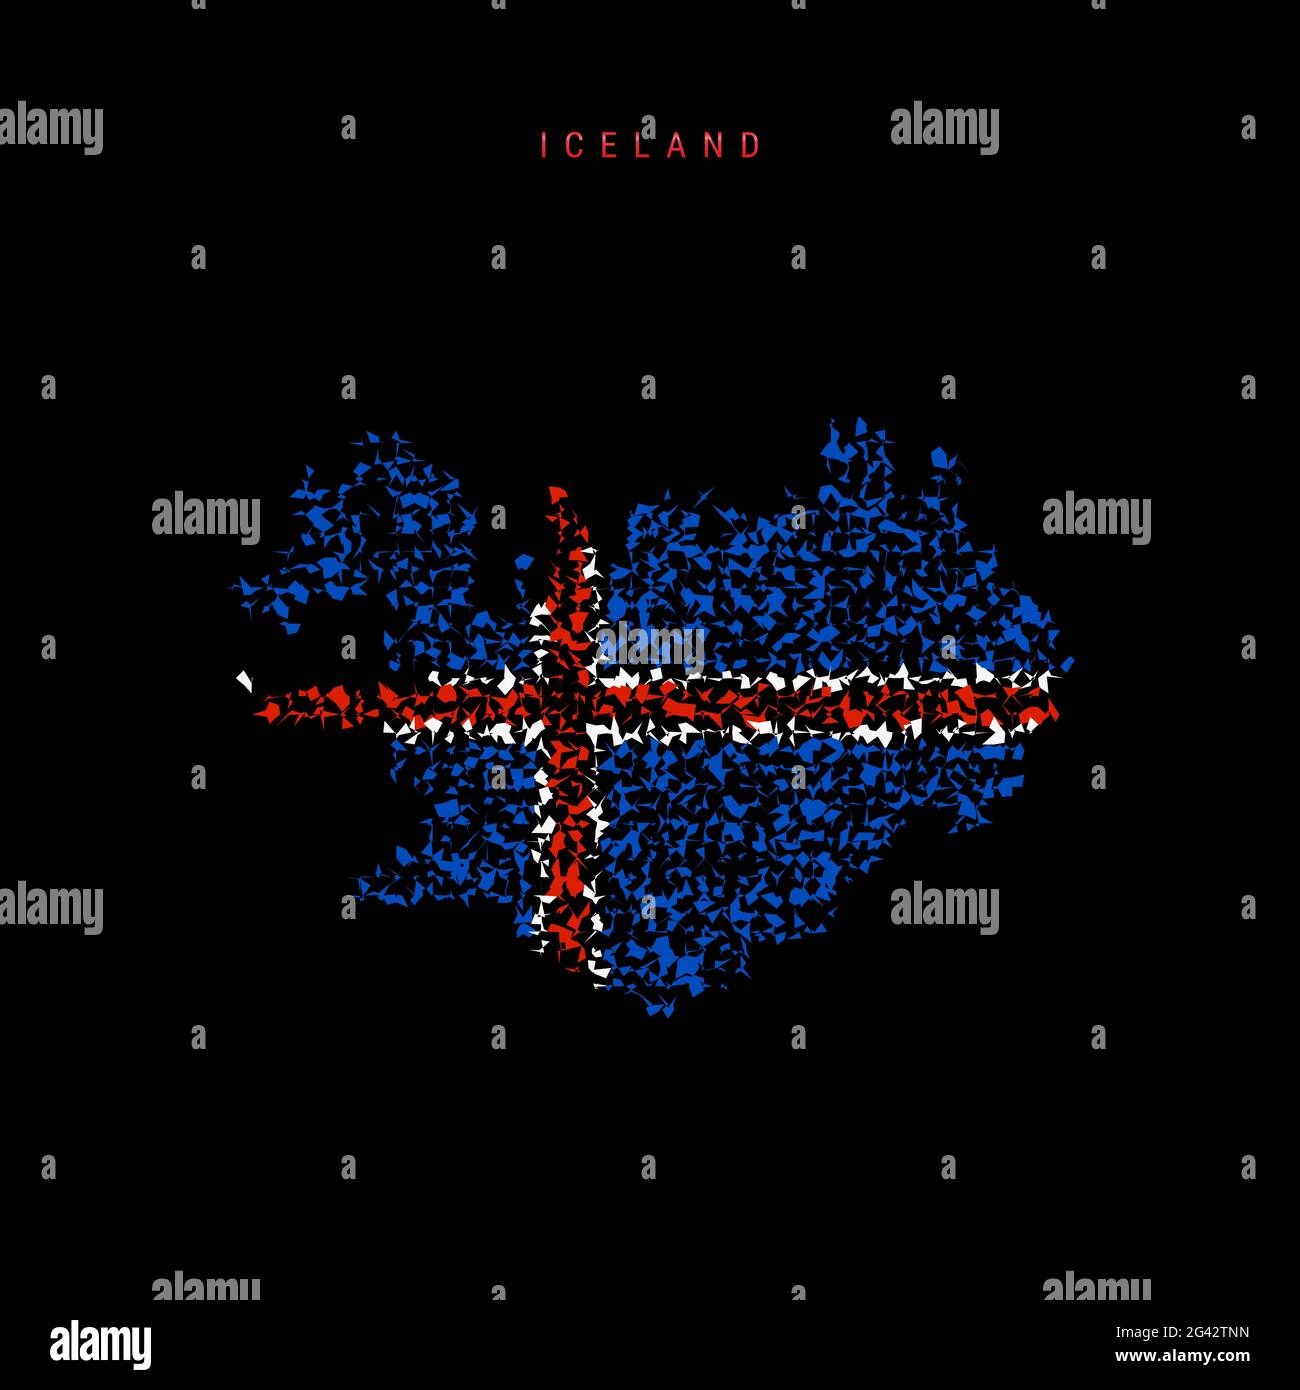 Island-Flaggenkarte, chaotisches Partikelmuster in den Farben der isländischen Flagge. Illustration isoliert auf schwarzem Hintergrund. Stockfoto